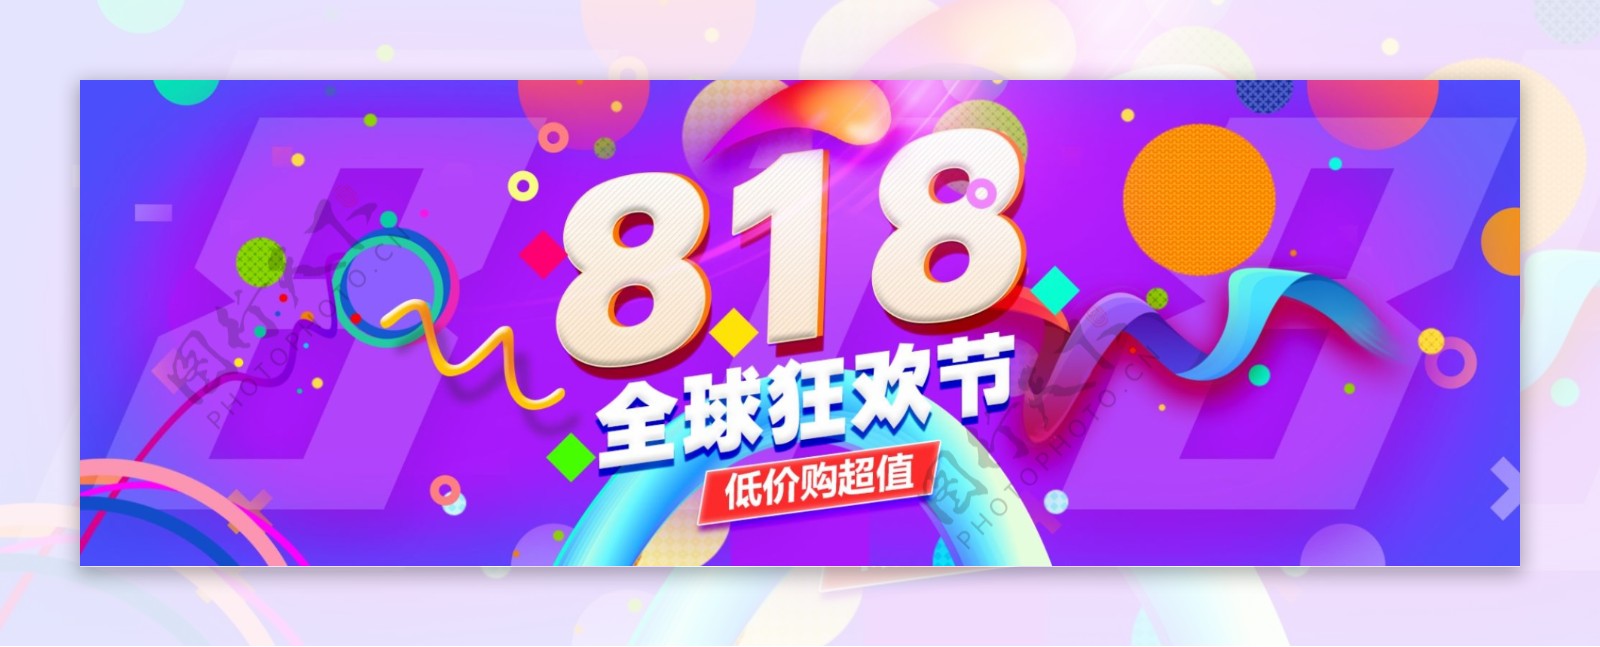 淘宝电商818全球狂欢节海报banner